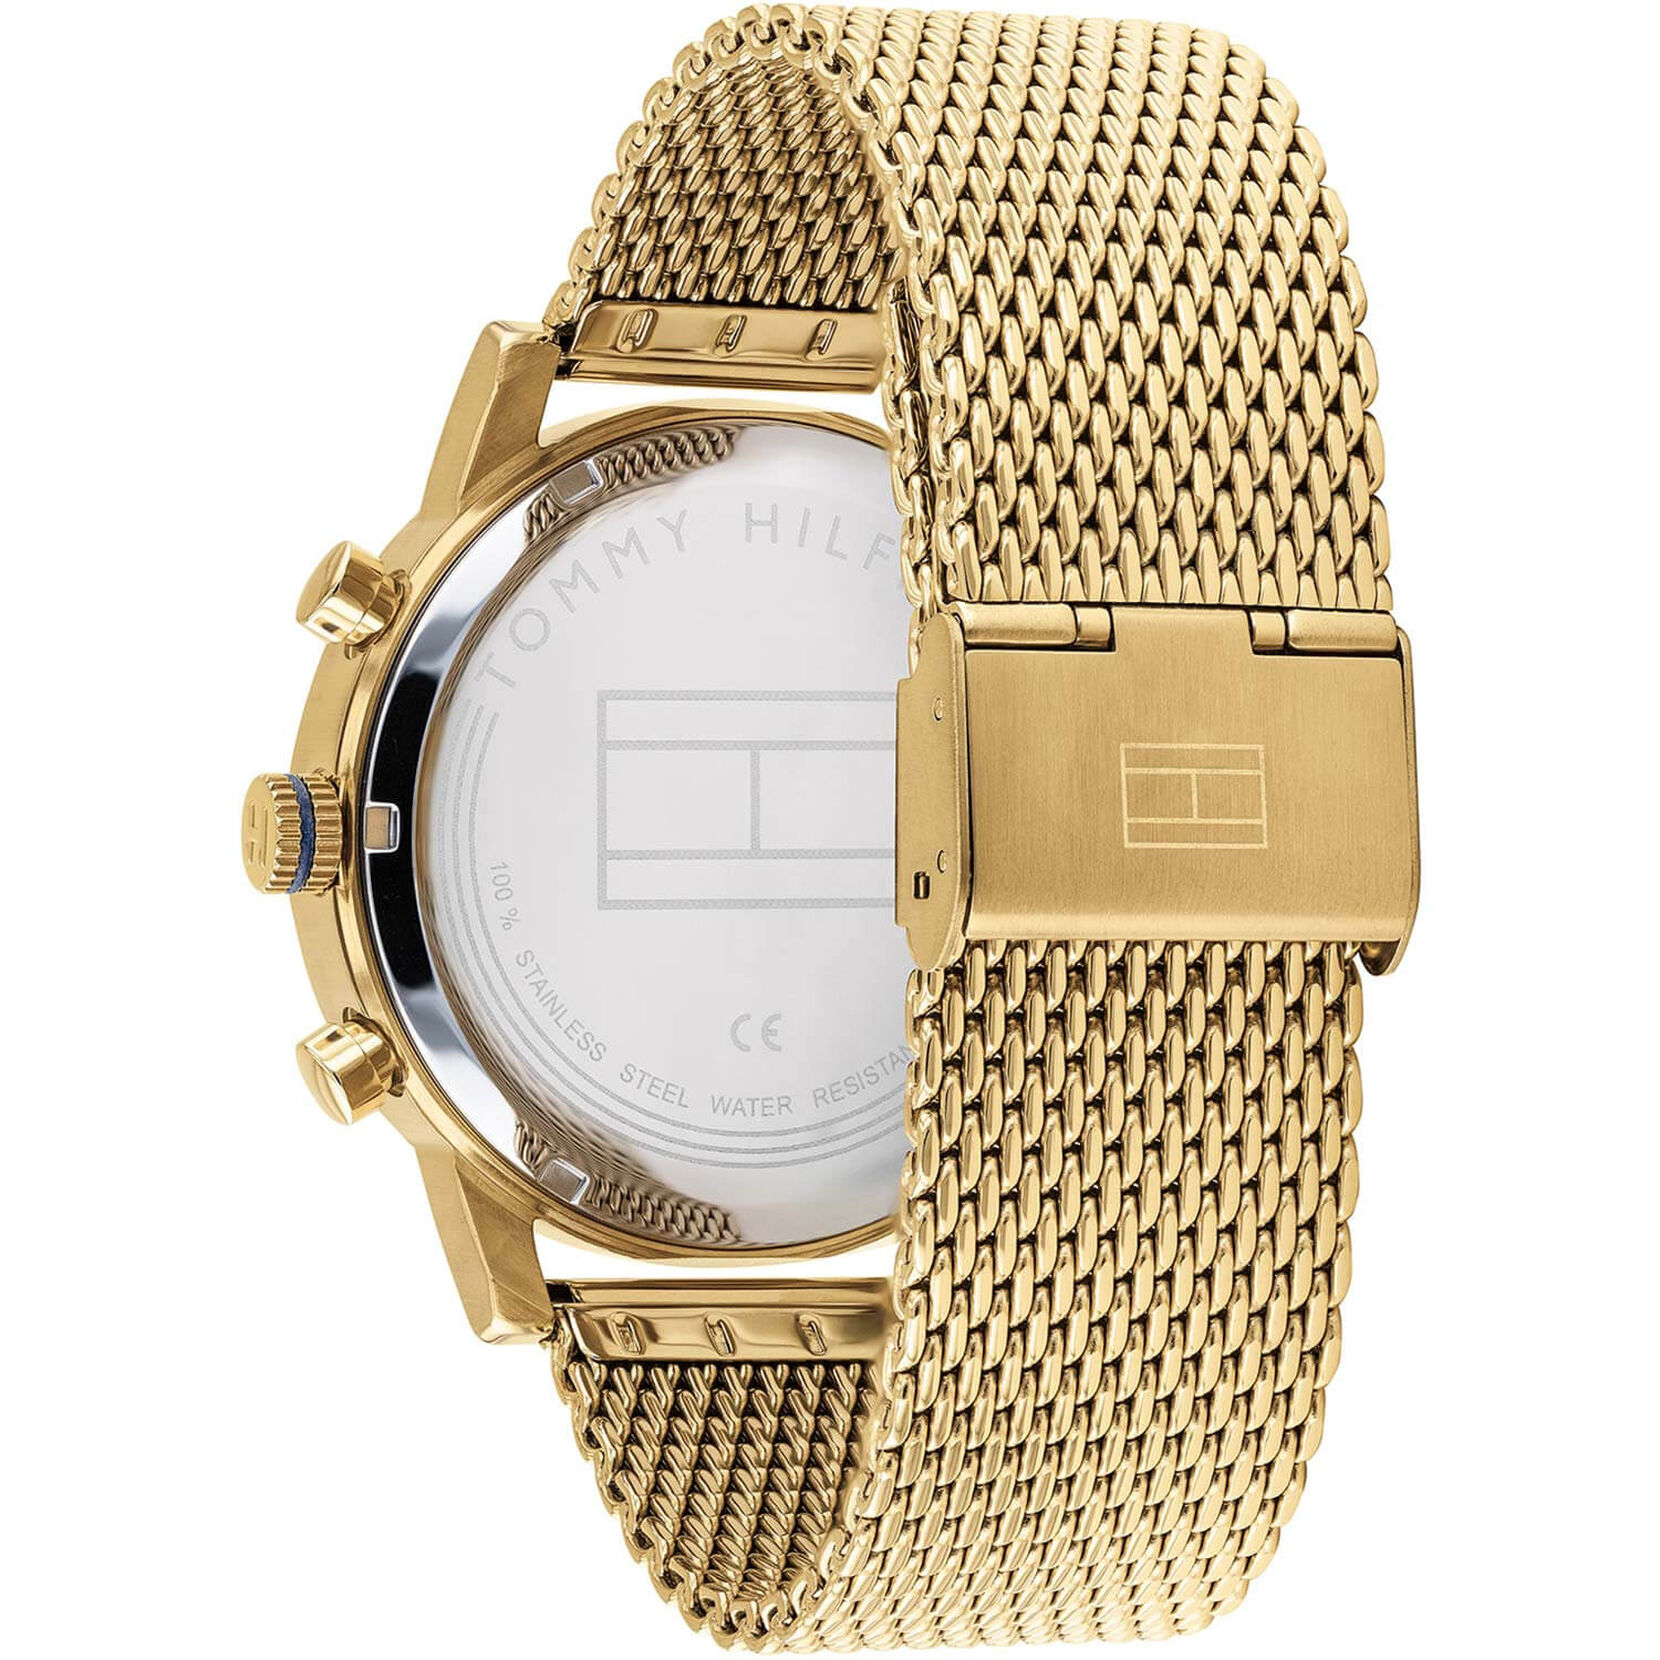 Mos hydrogen grim Tommy Hilfiger Men's Gold Plated Watch